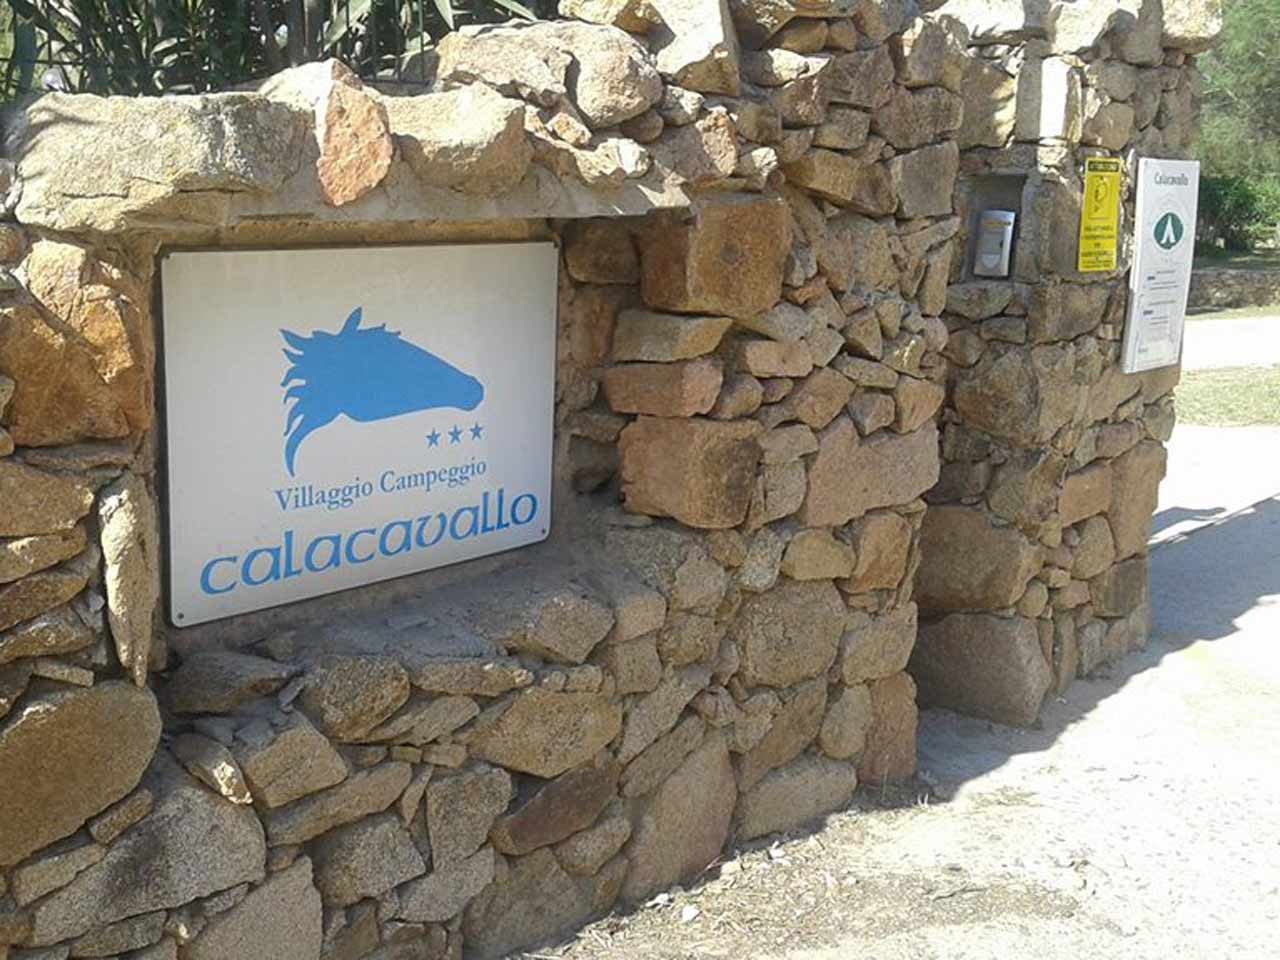 CALACAVALLO CAMPING AREA SOSTA - PLEINAIRCLUB